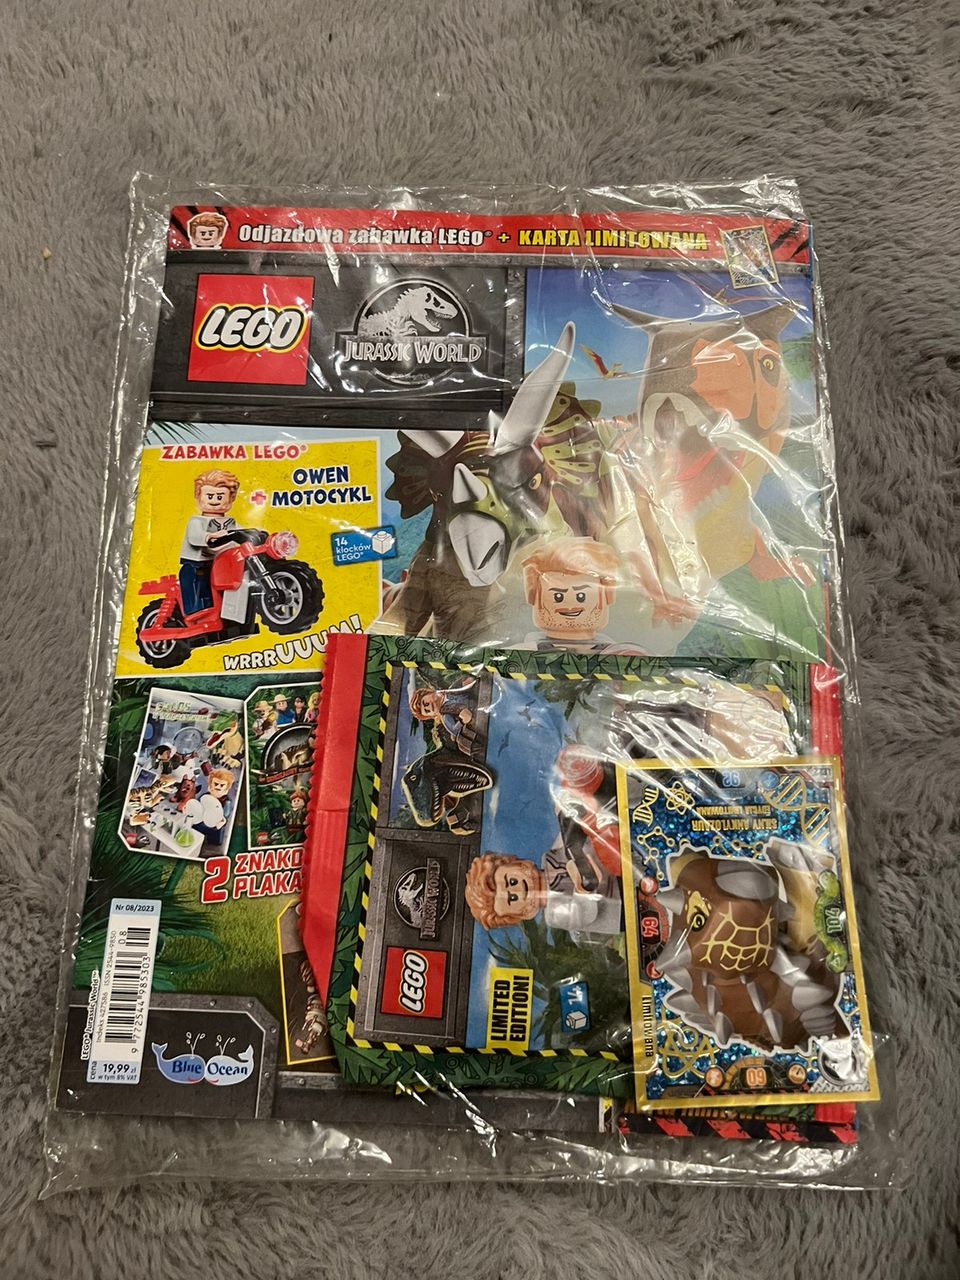 Lego lehti joka sisältää figuurin. (Huom. Lehti on puolaksi)